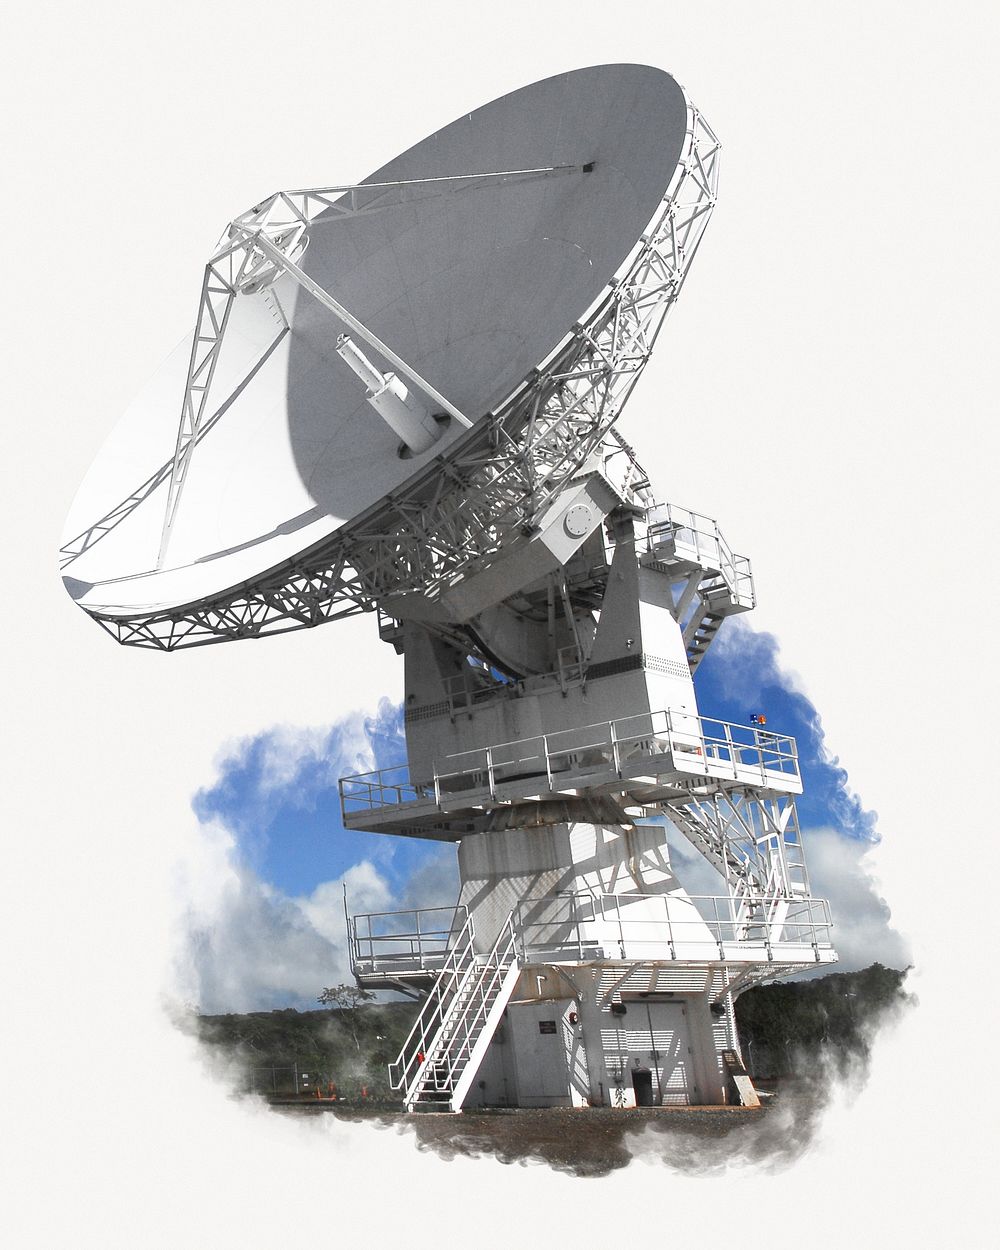 Satellite dish image on white background